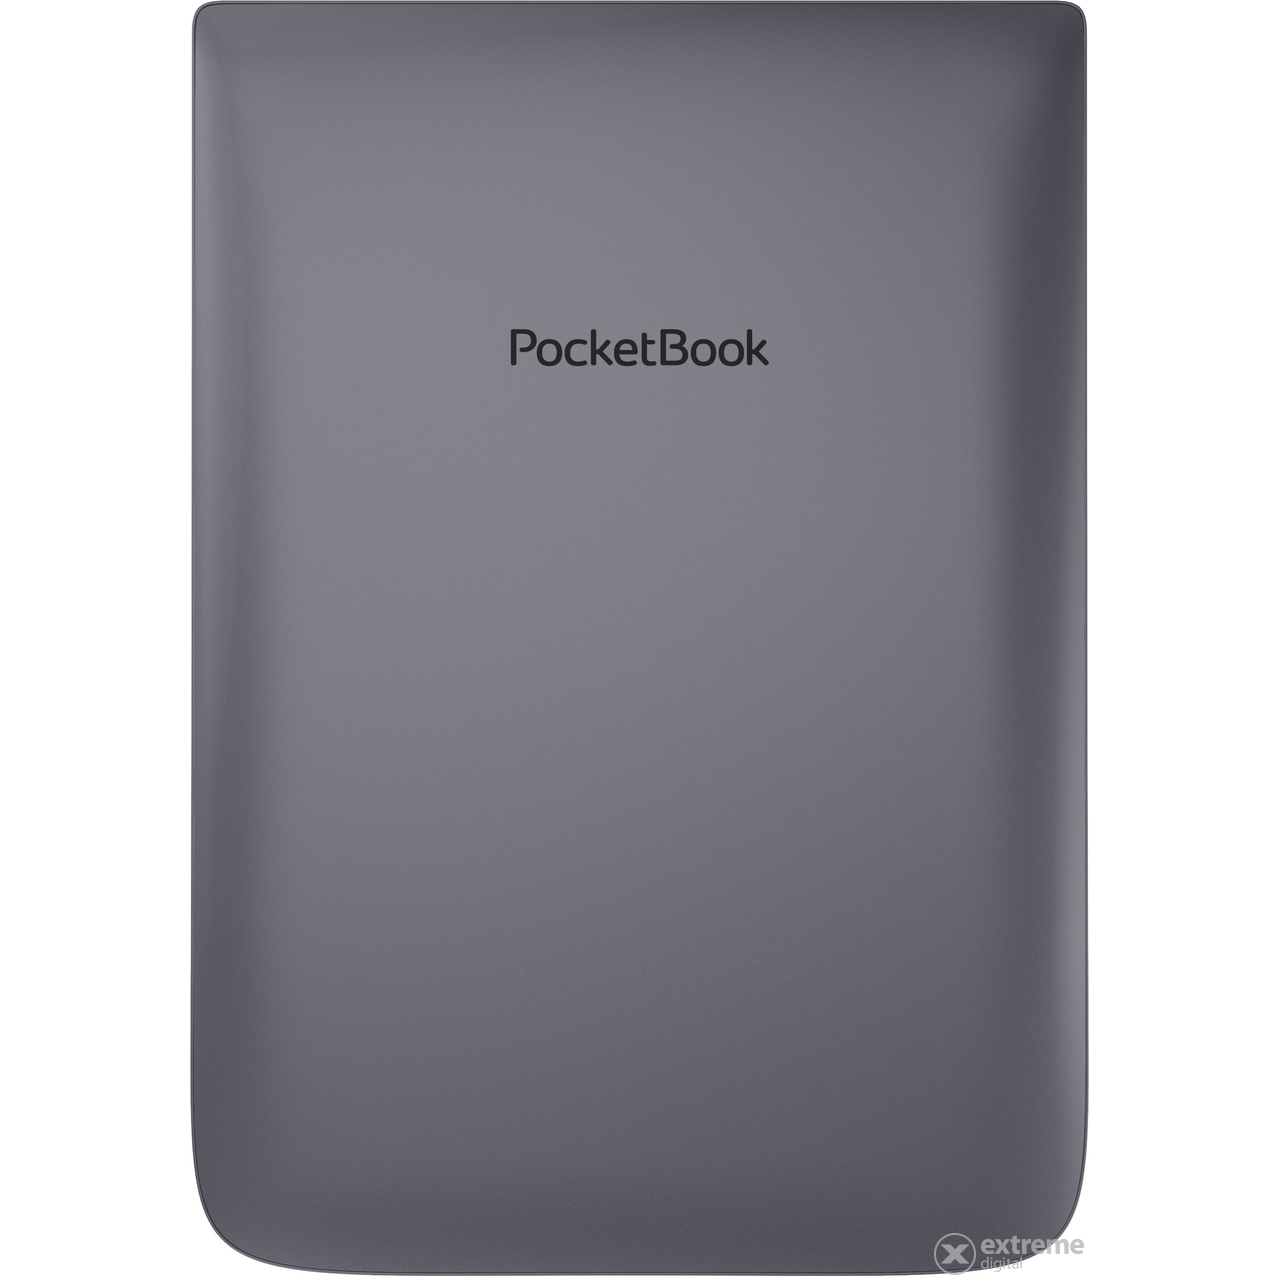 PocketBook Inkpad 3 Pro čtečka ebooků